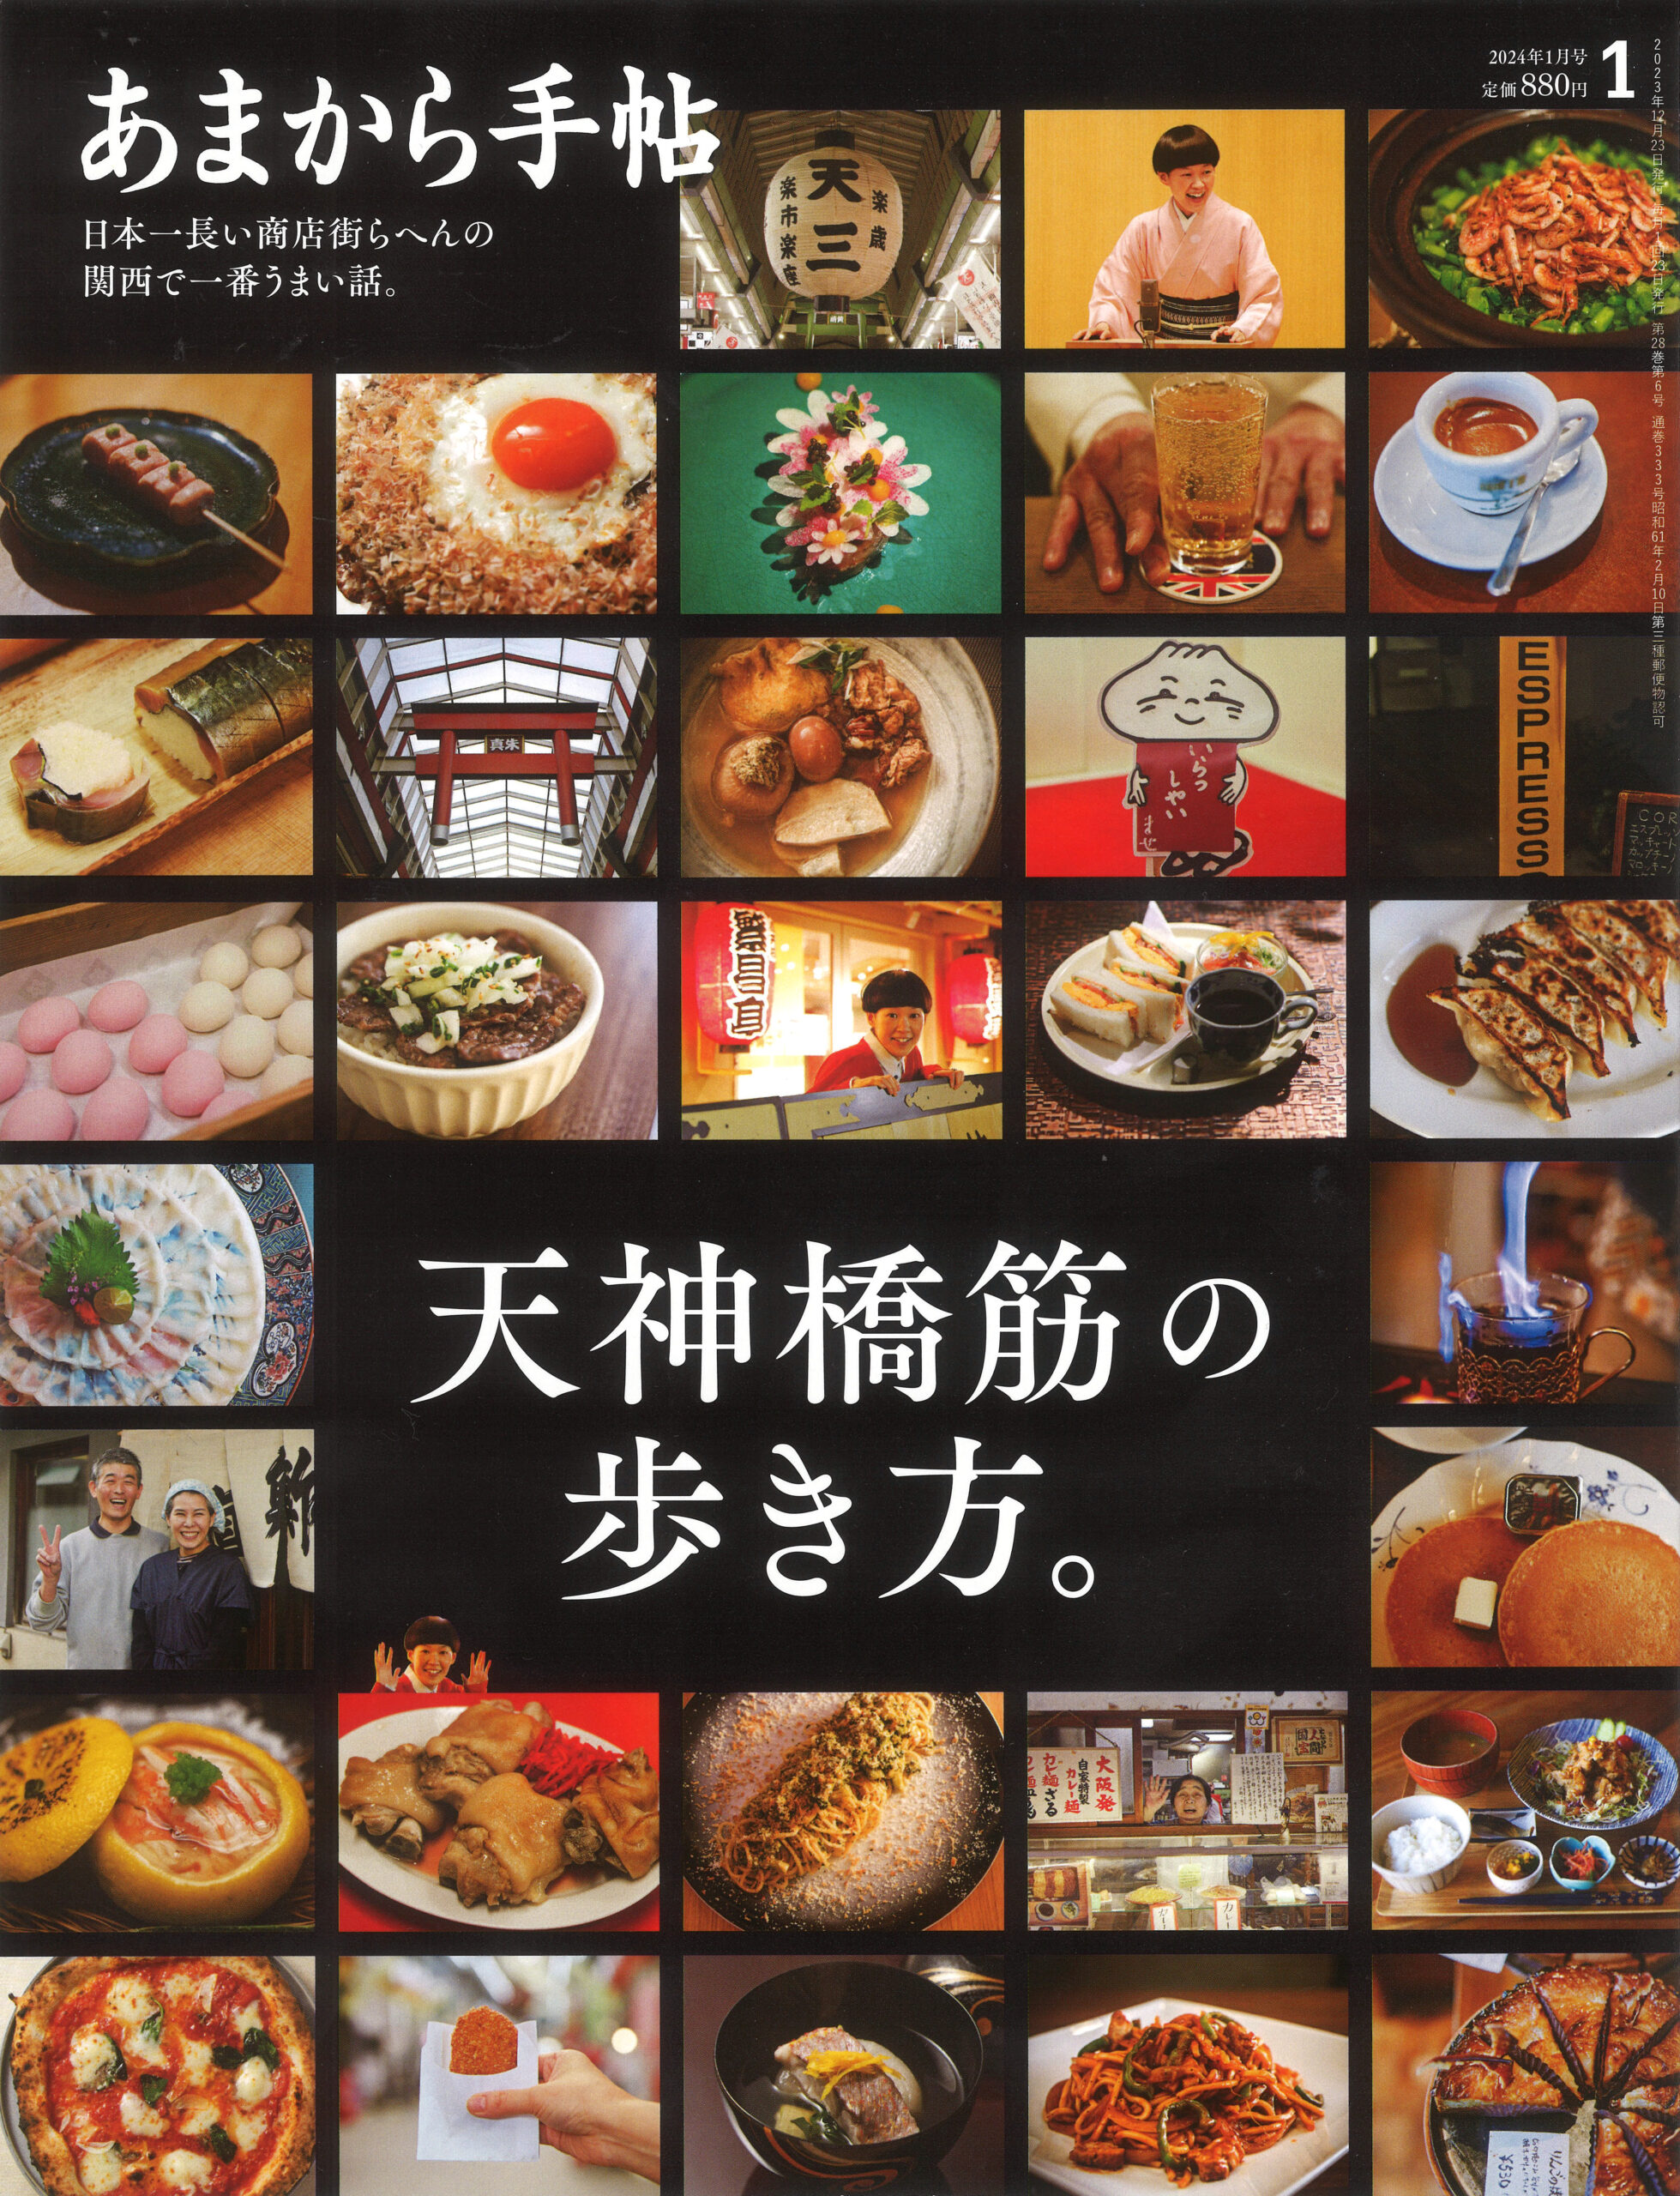 関西発グルメメディア 『あまから手帳』に『渡辺料理研究事務所』が掲載されました。